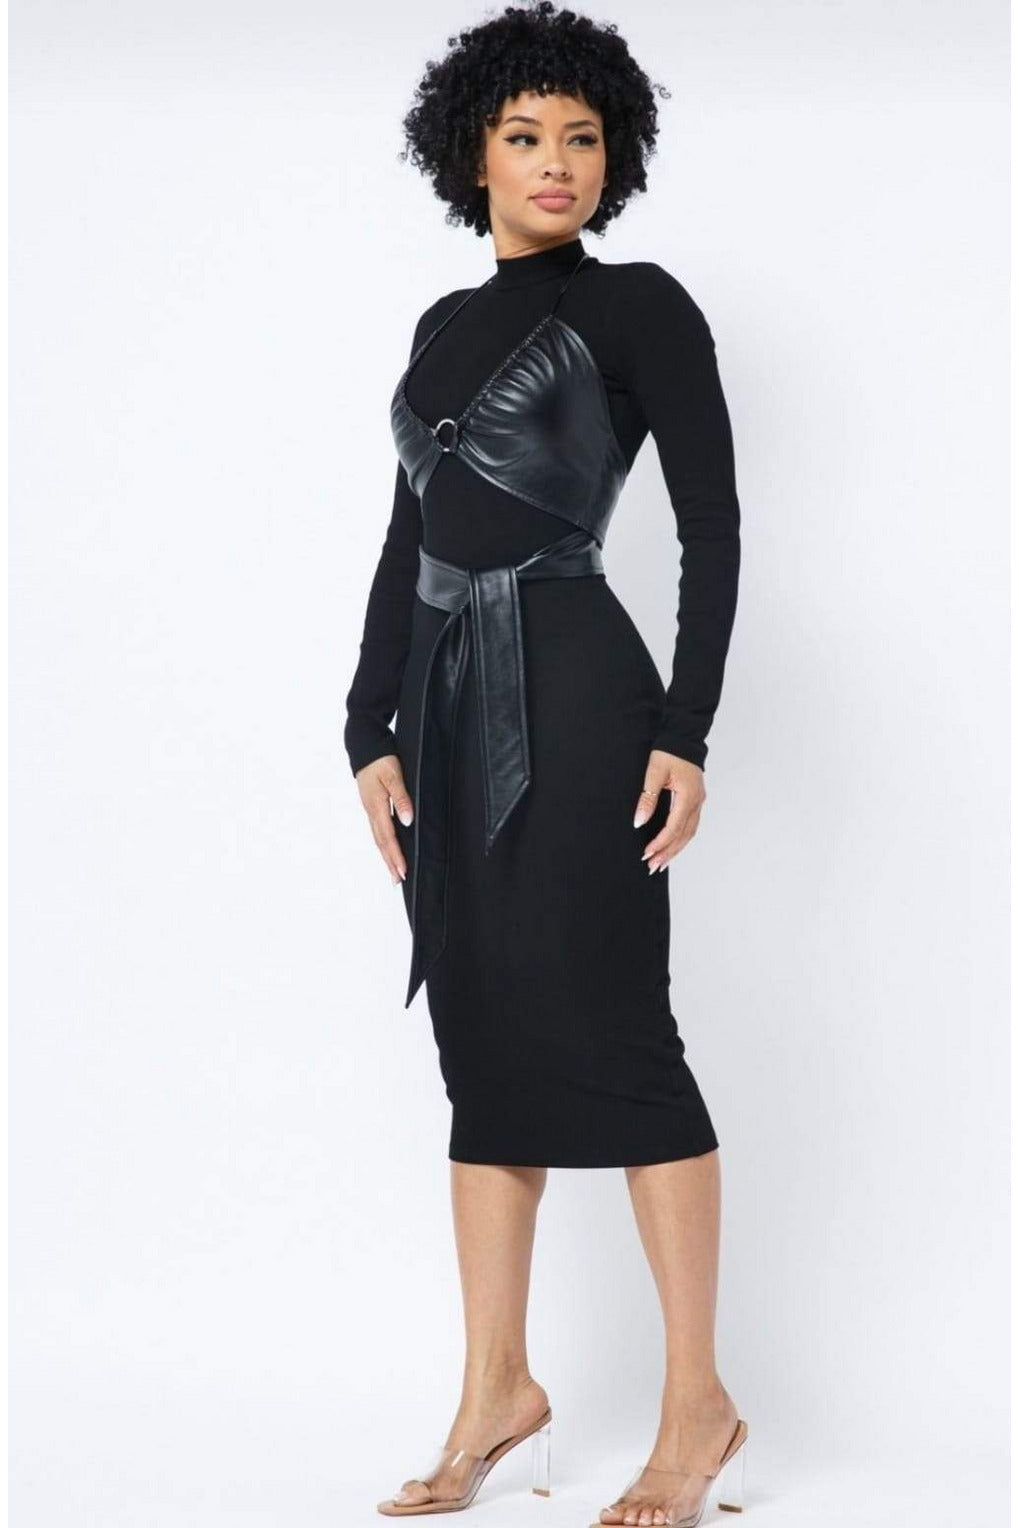 LAYLA- BLACK BELTED FAUX DRESS